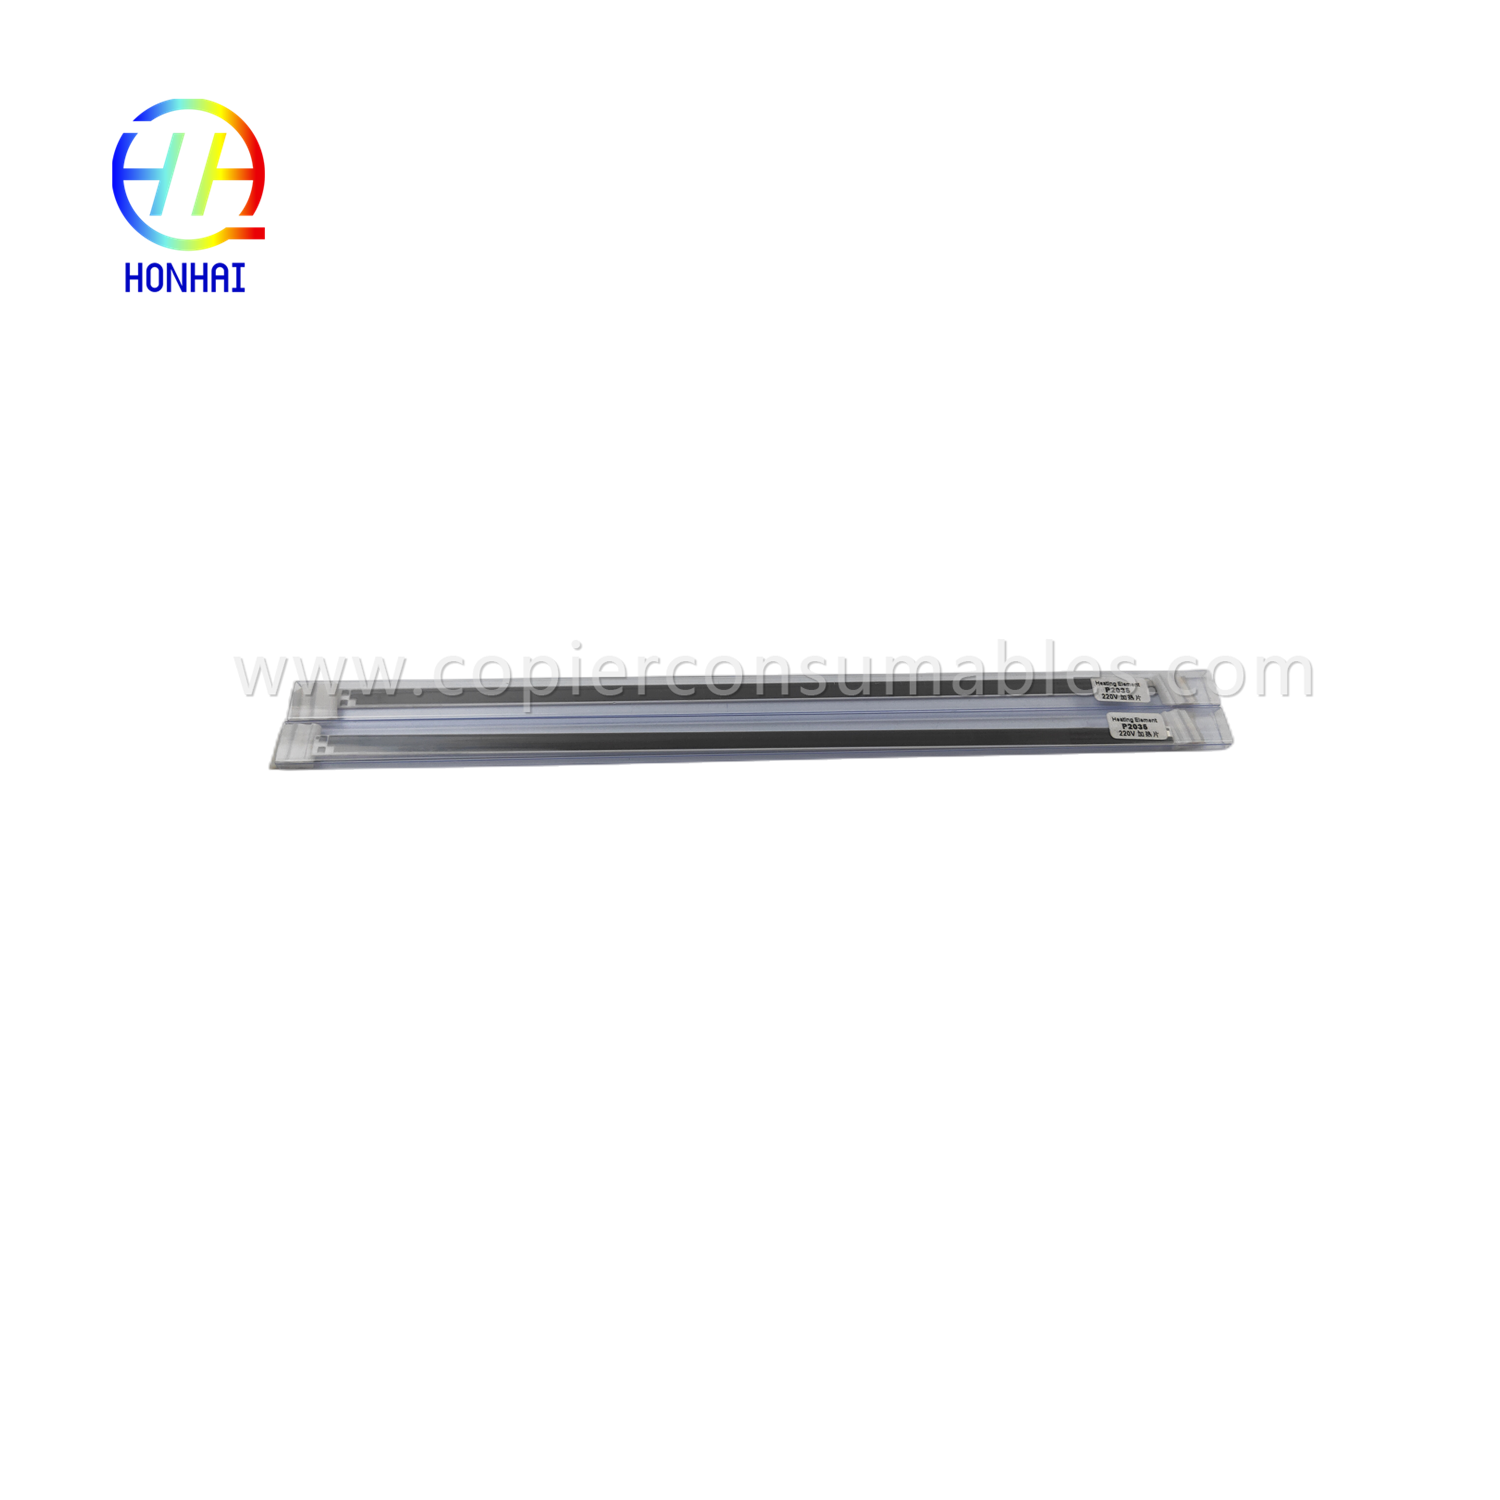 https://c585.goodo.net/heating-element-220v-oem-for-hp-laserjet-p2035-p2055-rm1-6406-heat-product/